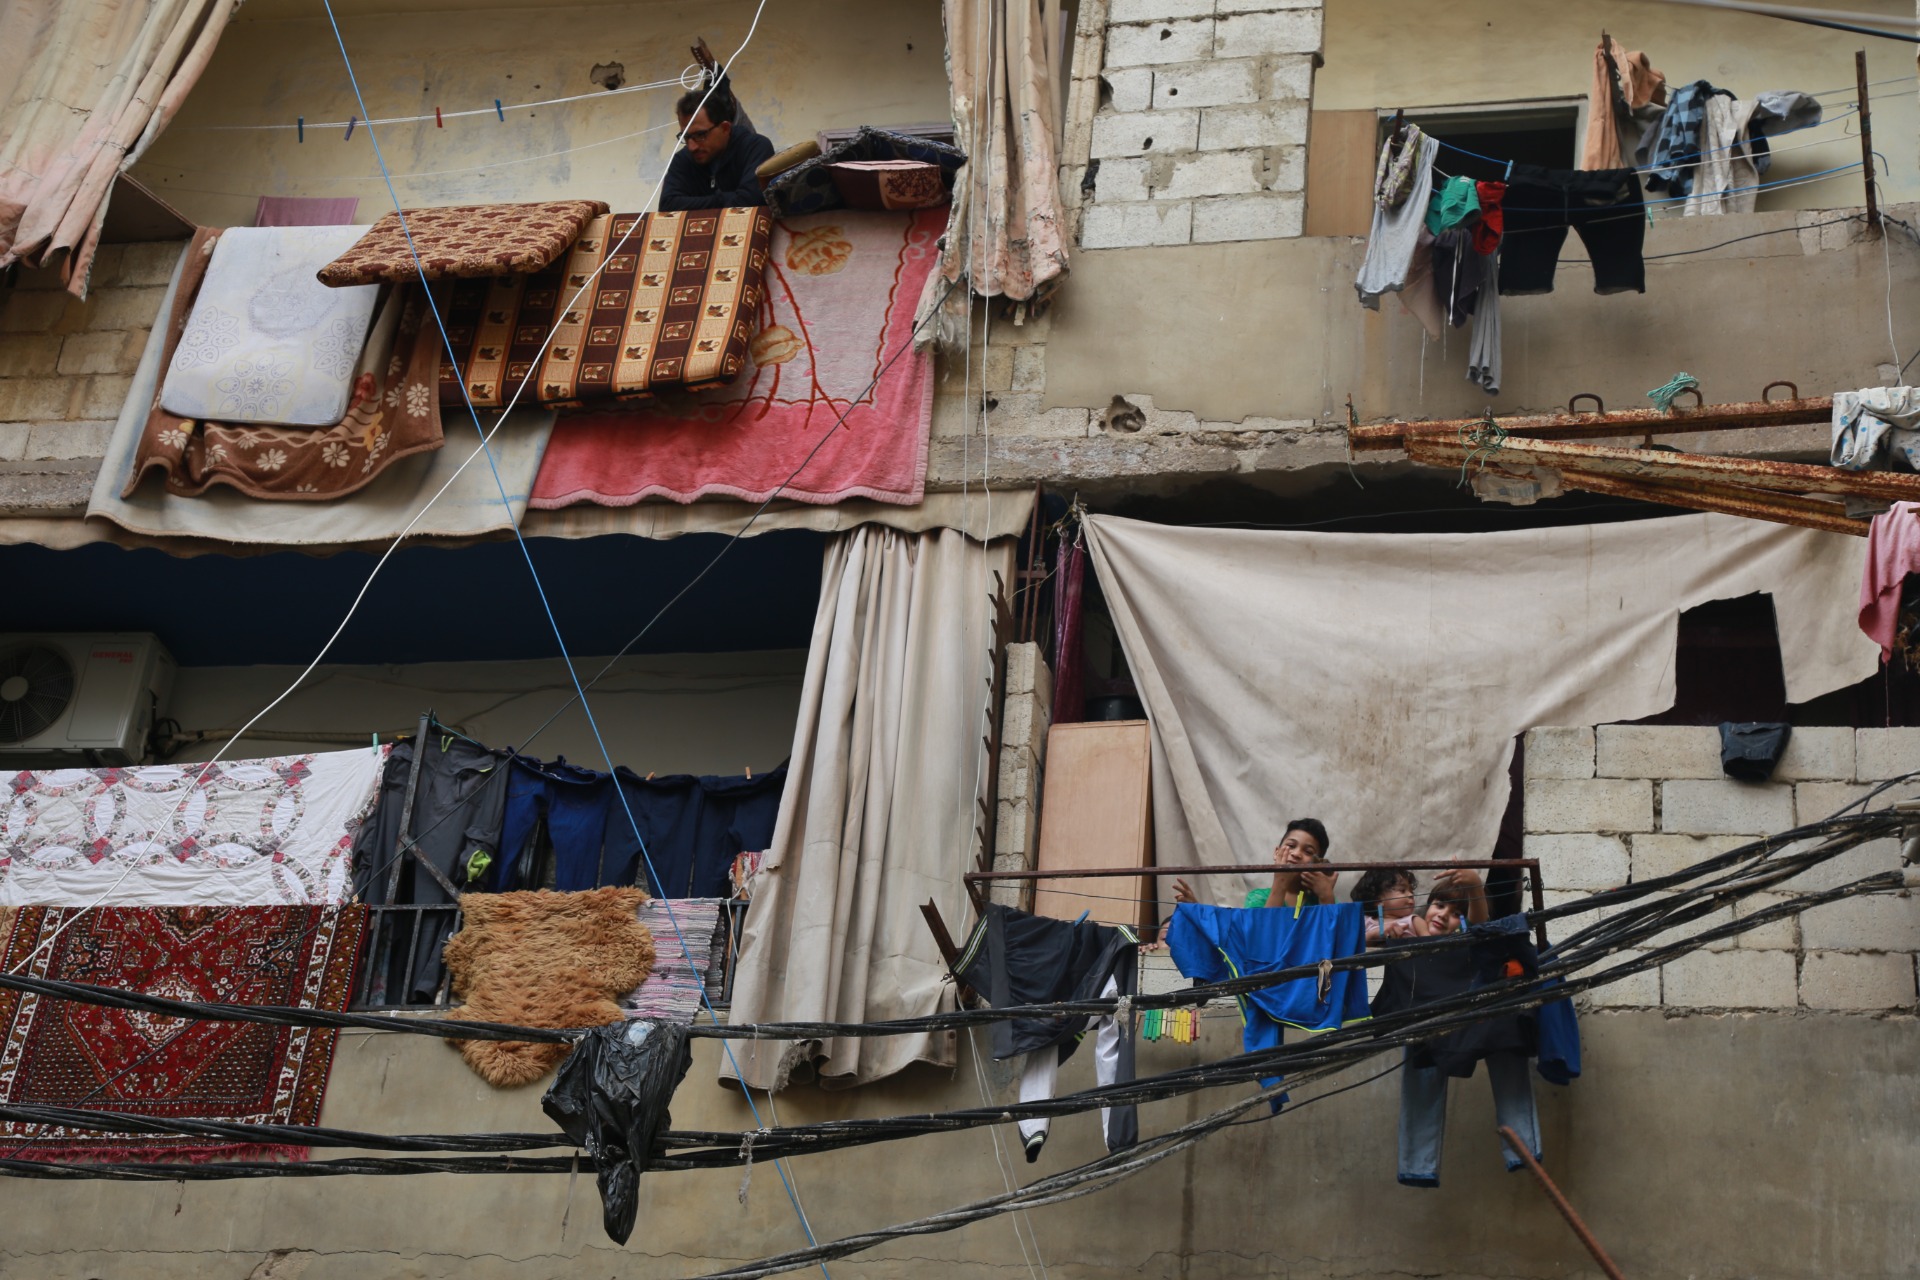 أزمة البطالة تنهش النسيج المجتمعي في  المخيمات والتجمعات الفلسطينية في لبنان  (تقرير حقوقي)   